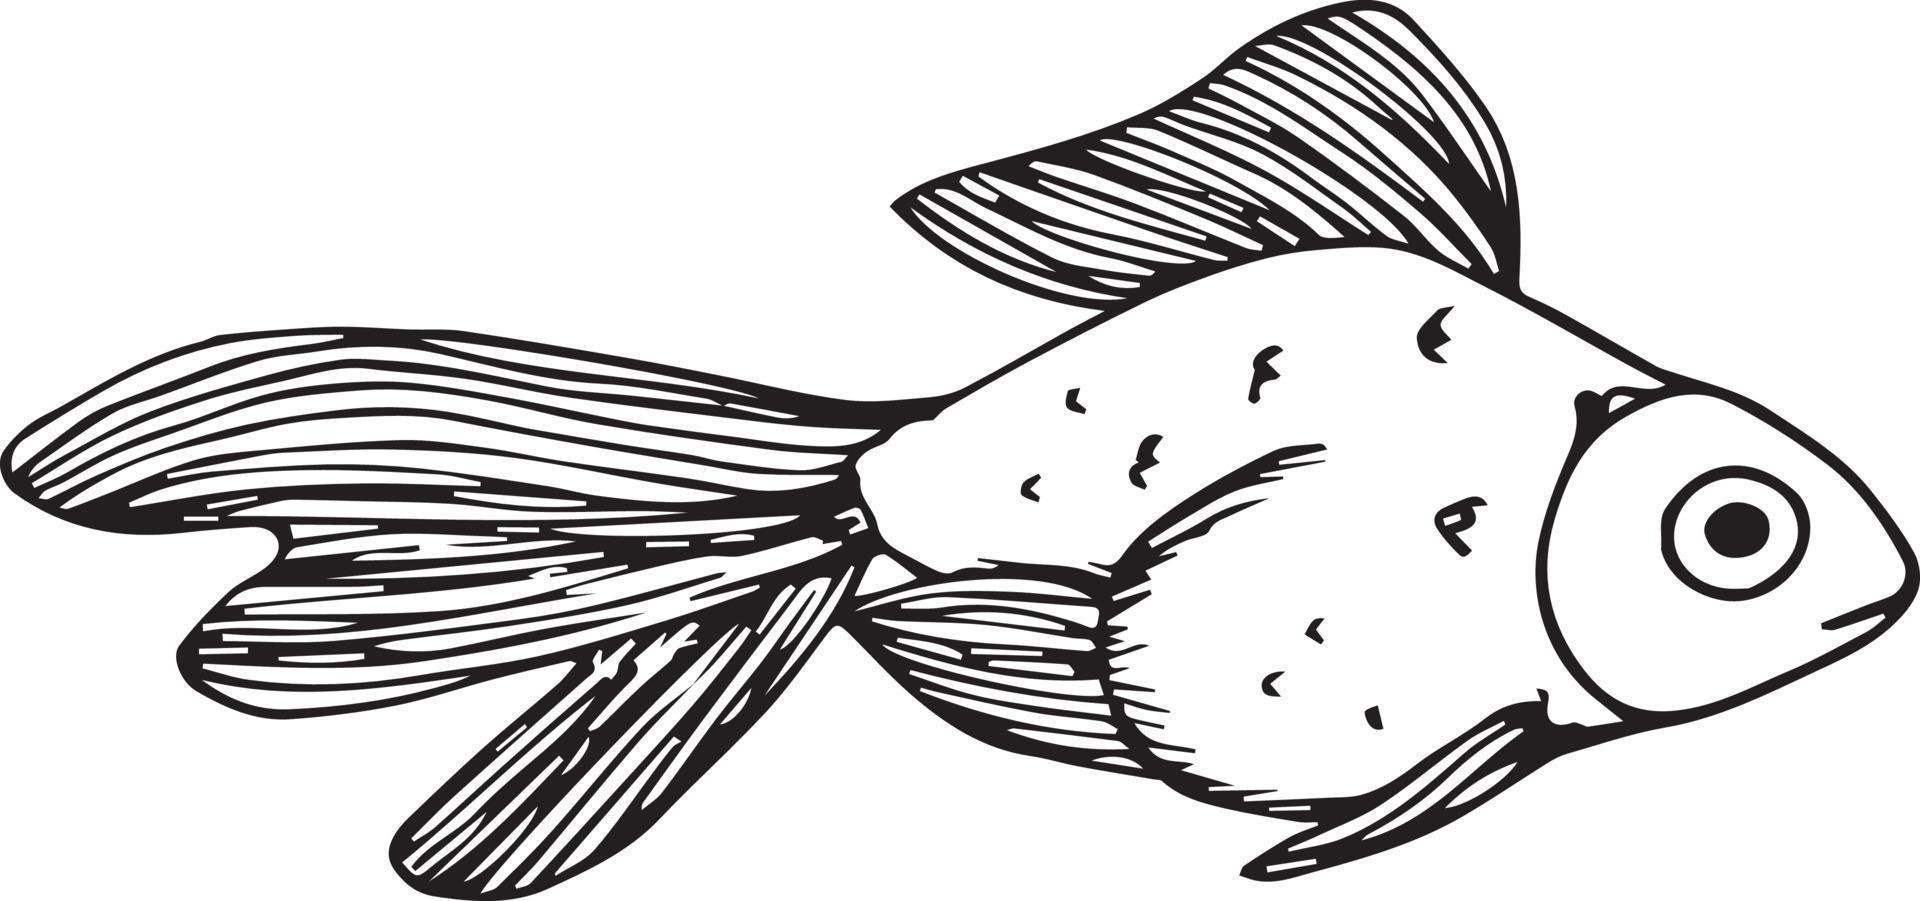 doodle peixe no fundo branco vetor